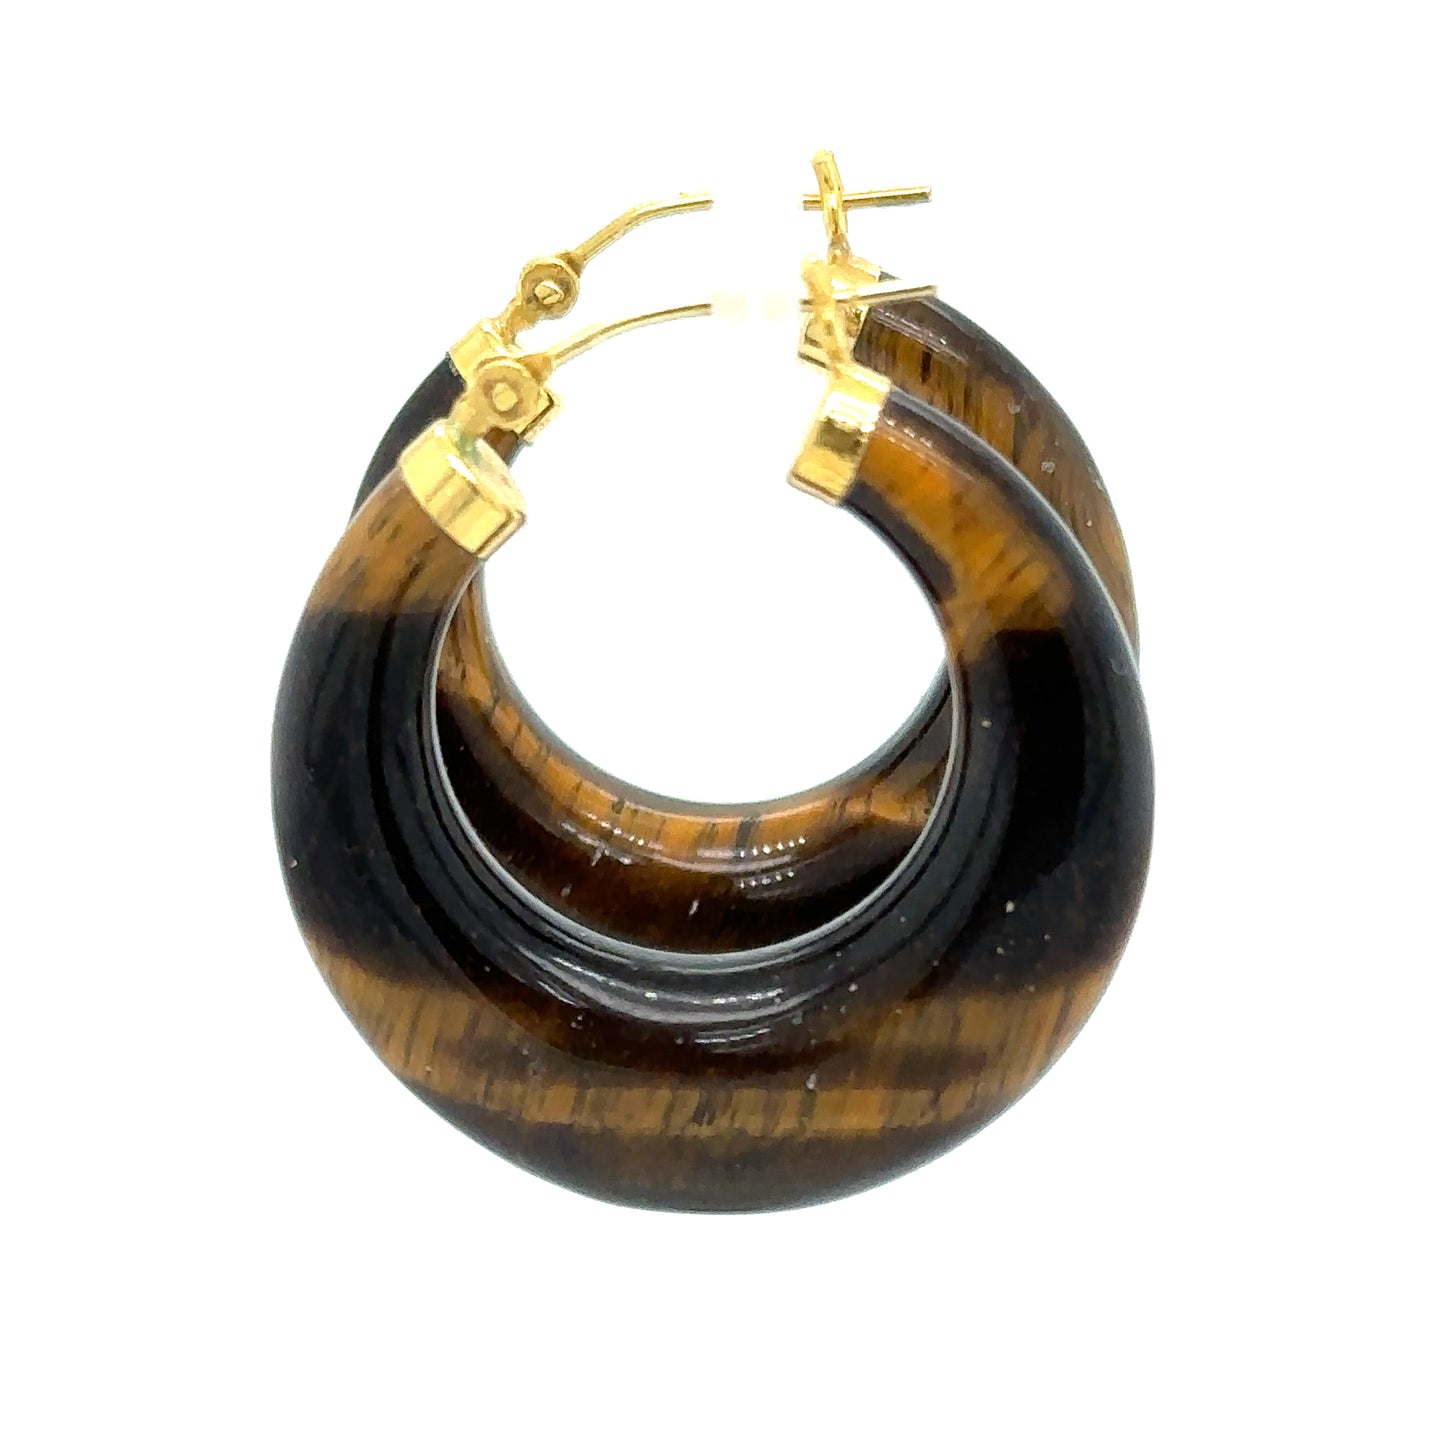 Circa 1950s Retro Tiger Eye Gemstone Hoop Earrings in 14K Gold